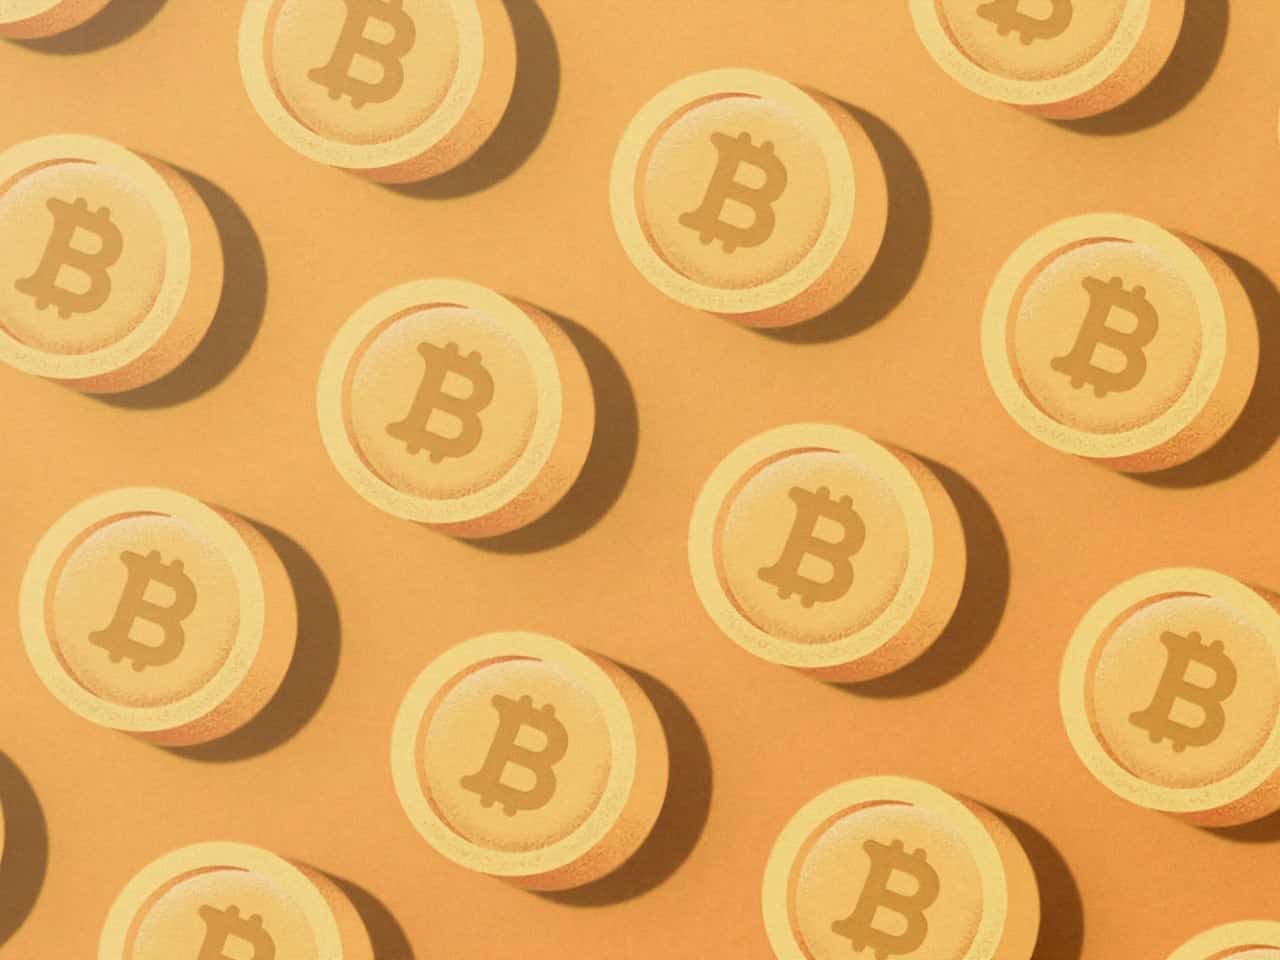 Perché Bitcoin è speciale – 7 motivi principali